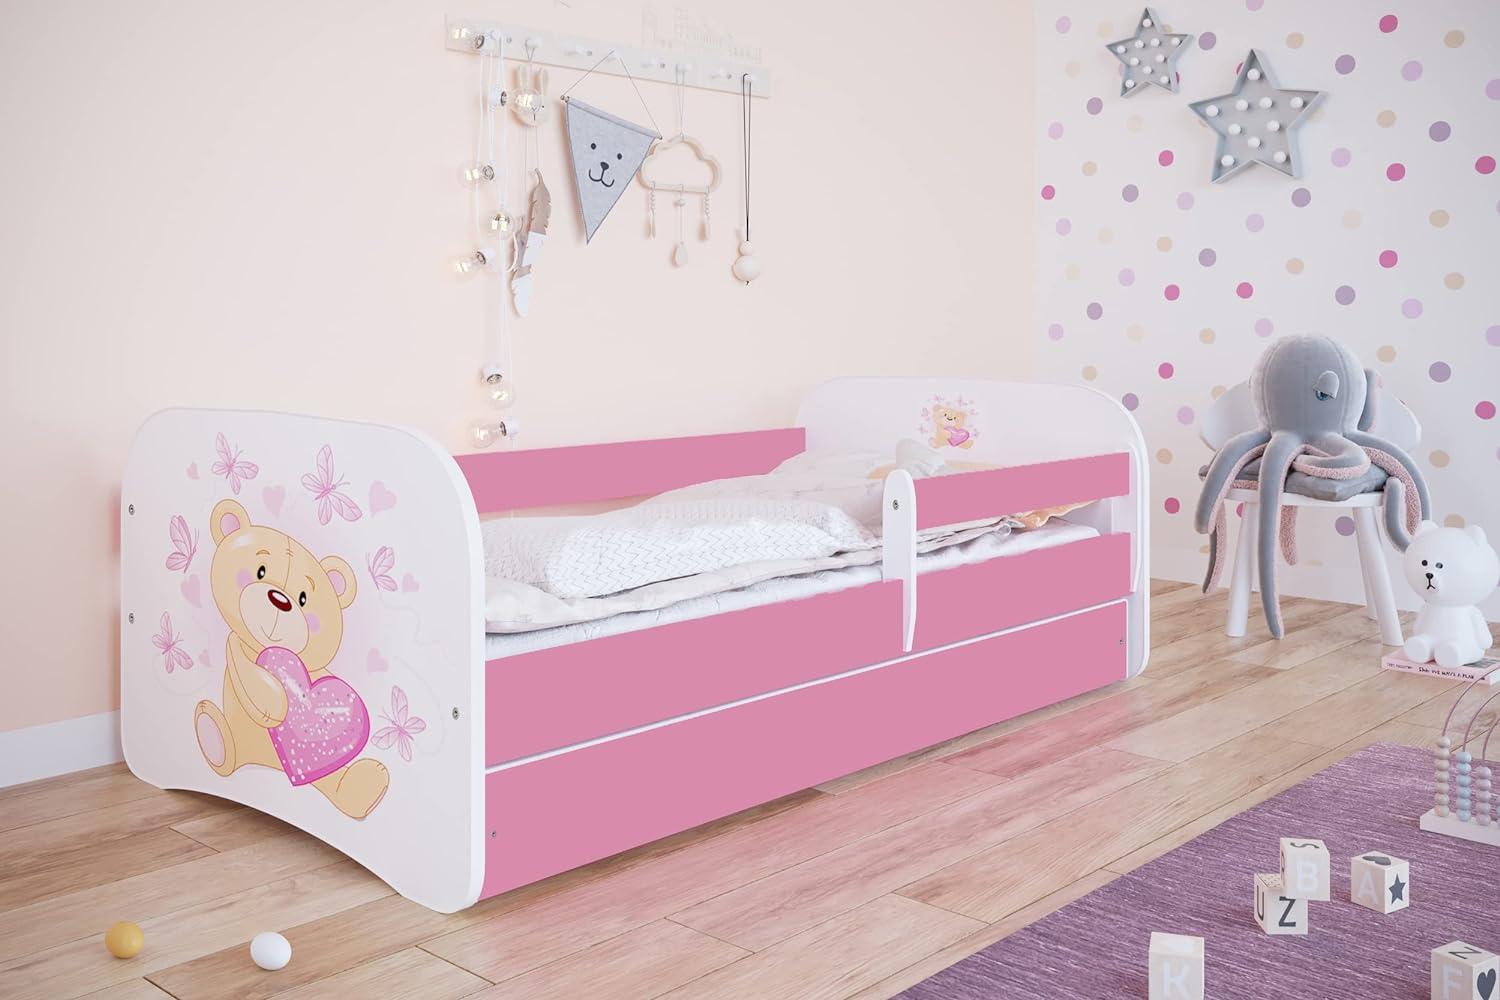 Kocot Kids 'Teddybär mit Schmetterlingen' Einzelbett pink/weiß 80x180 cm inkl. Rausfallschutz, Matratze, Schublade und Lattenrost Bild 1